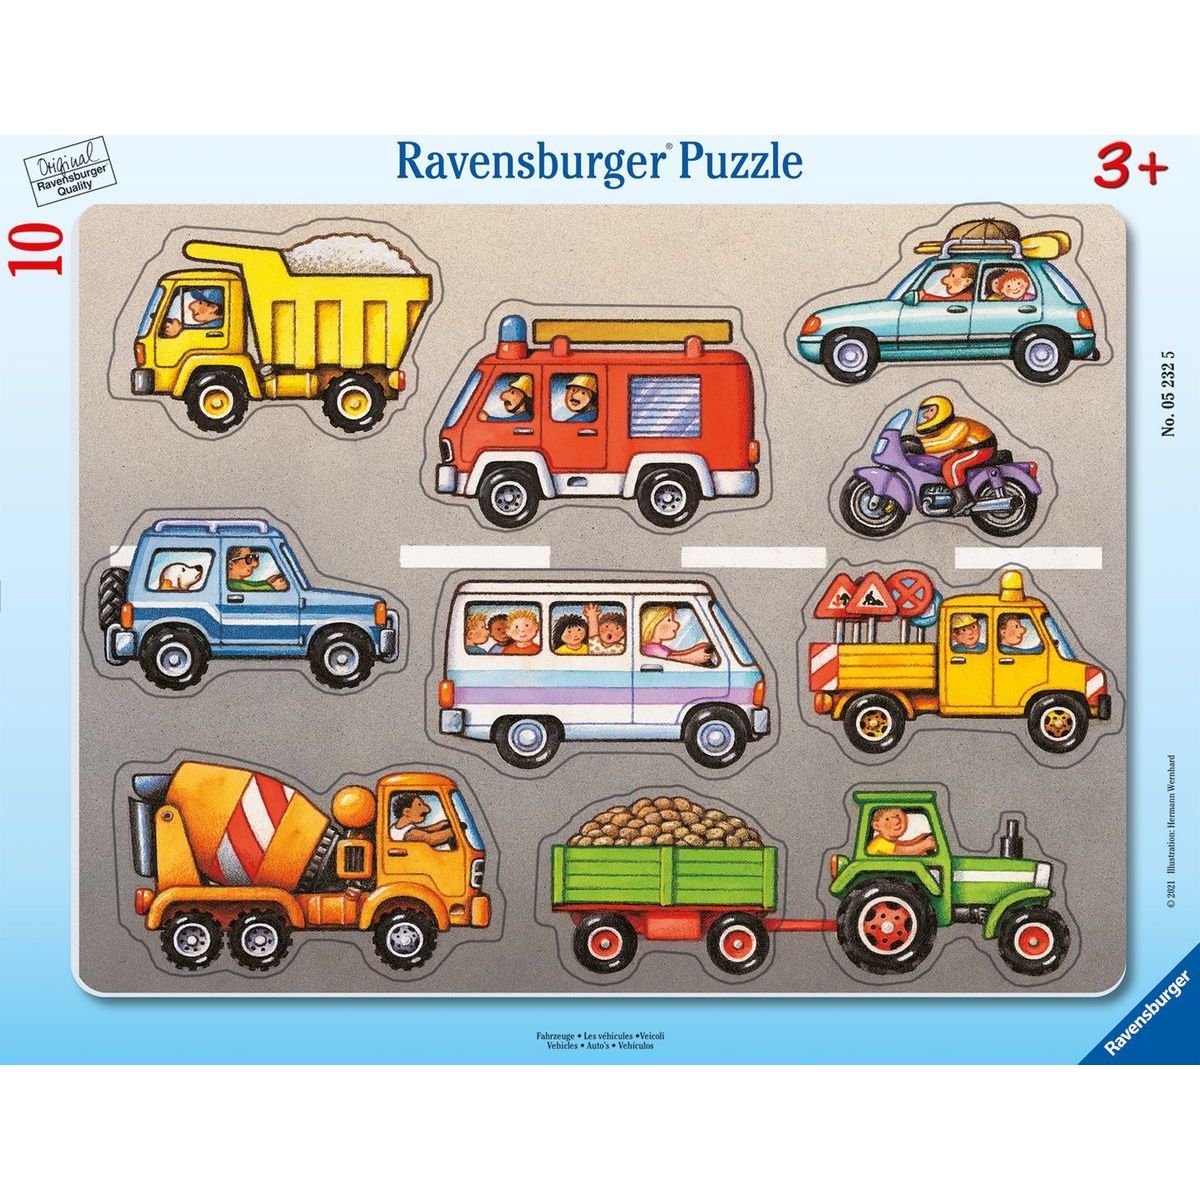 Ravensburger Puzzle 052325 Vozidla 10 dílků